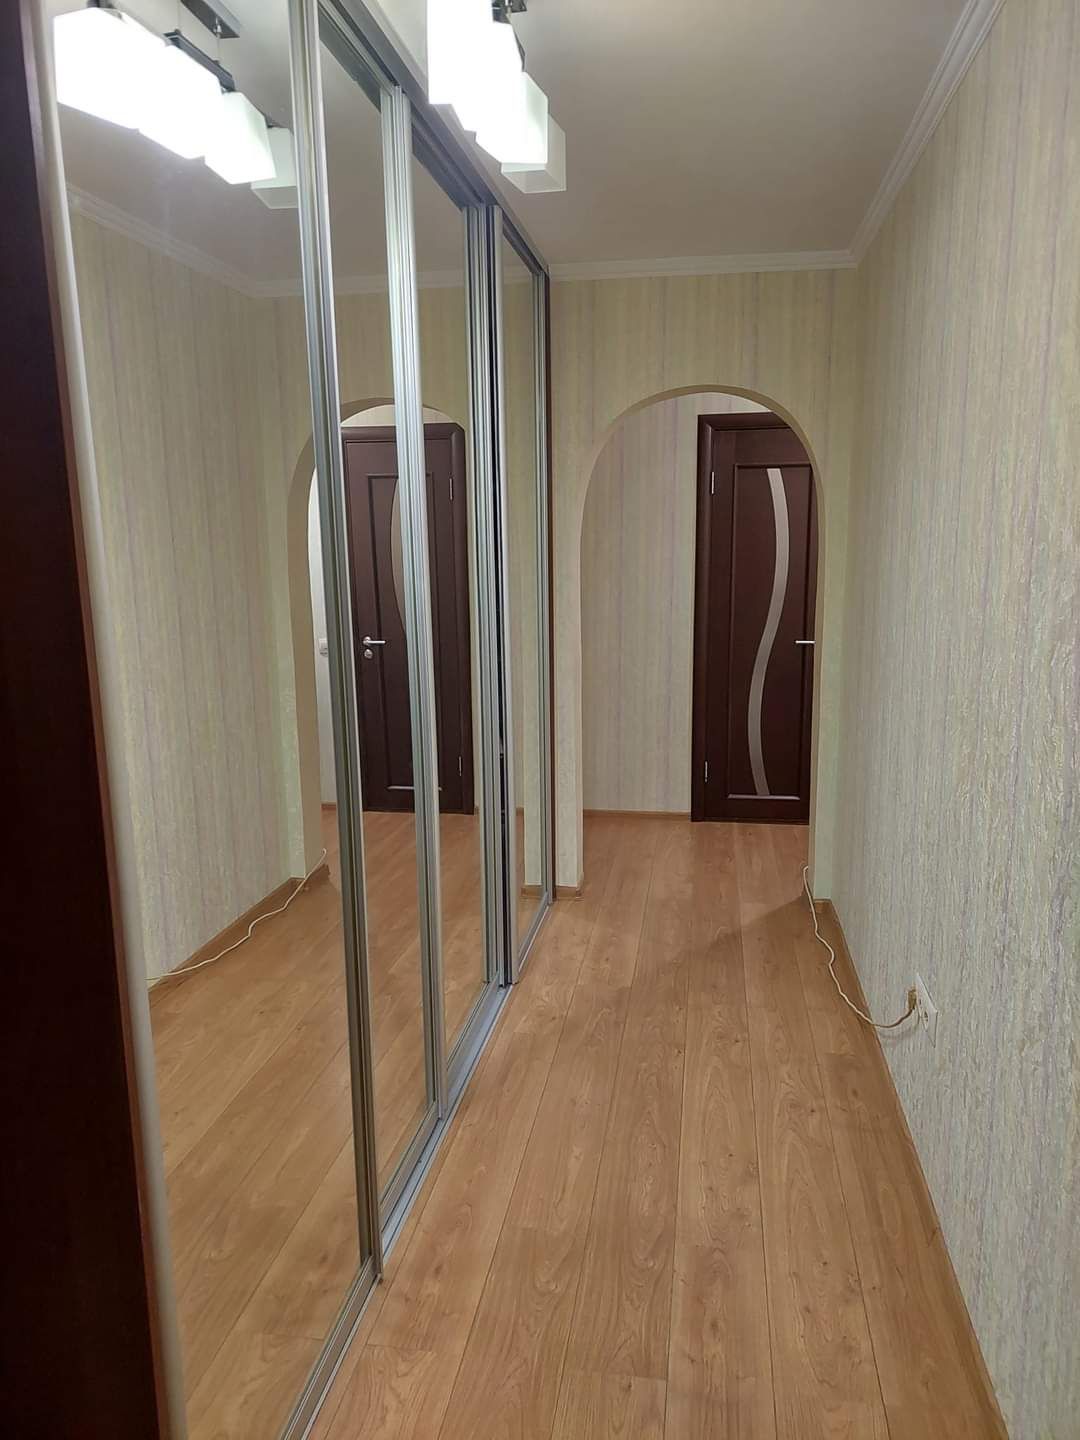 Продается однокомнатная квартира по ул. Москаленко 8б